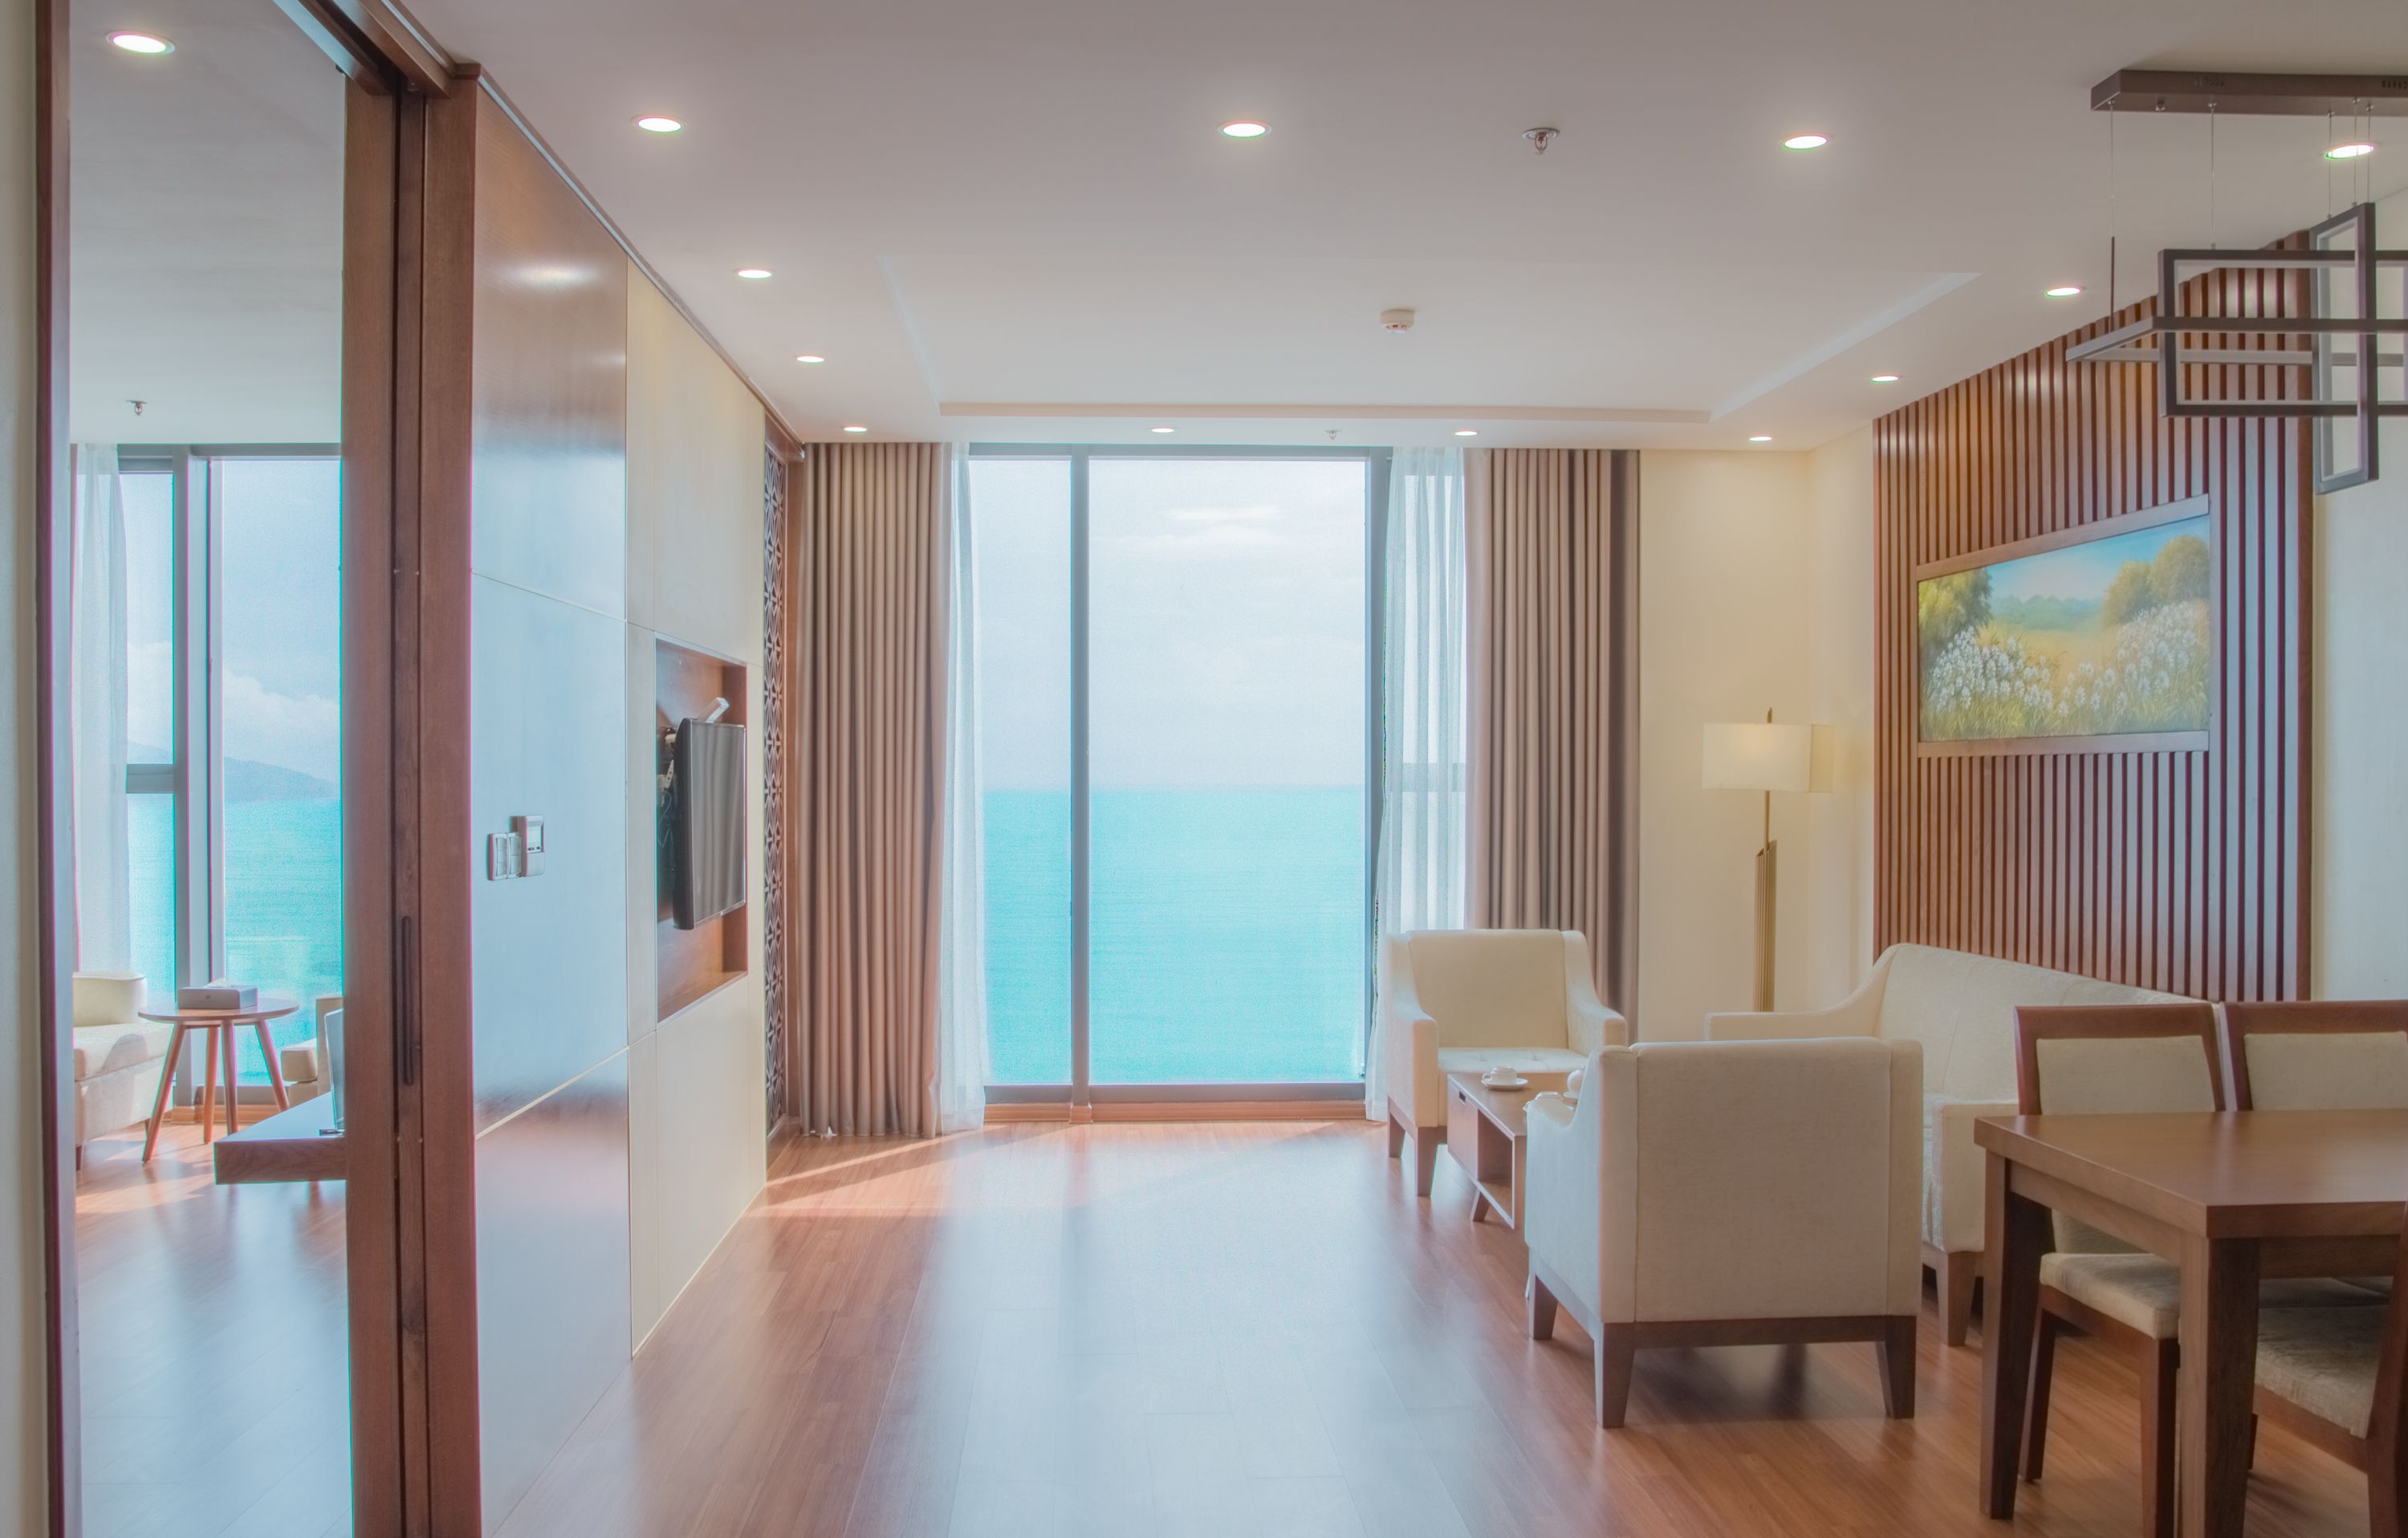 KHUYẾN MÃI LỚN CHÀO HÈ 2020 - XUA TAN NÓNG BỨC – TRỌN NIỀM VUI CÙNG KHÁCH SẠN DỊCH VỤ TIÊU CHUẨN 5 SAO Rosamia Da Nang Hotelkhách sạn biển 5 sao đẹp nhất Đà Nẵng